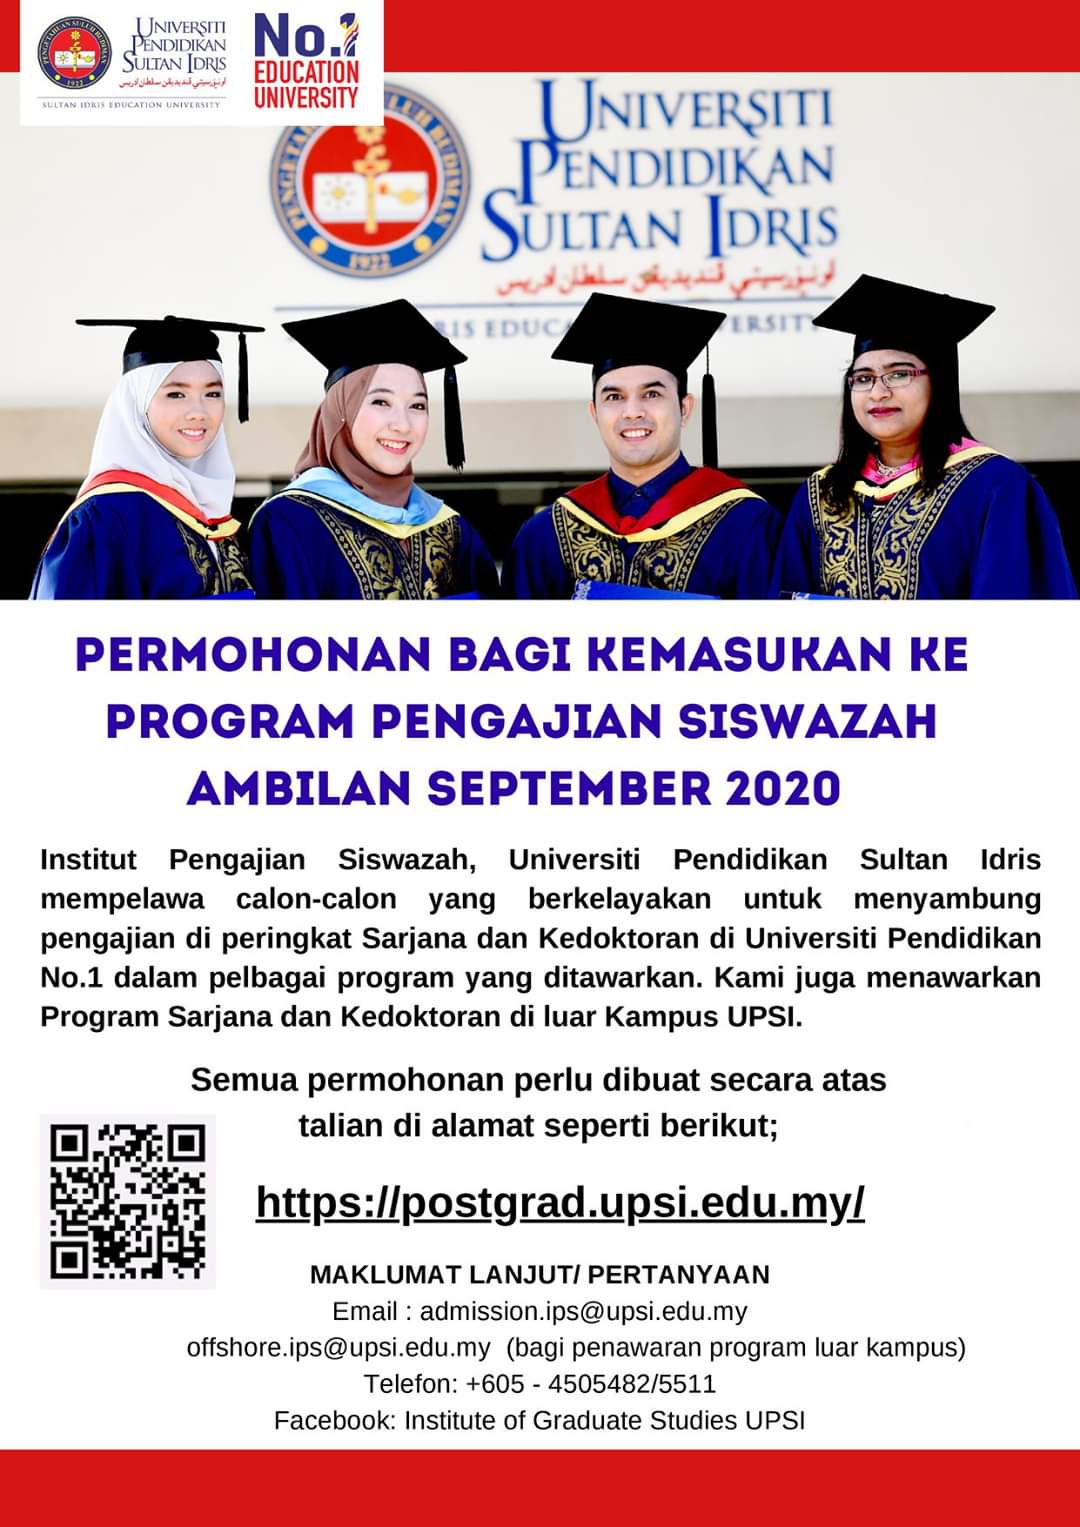 Upsi Malaysia On Twitter Jom Sambung Master Phd Di Upsi Permohonan Bagi Kemasukan Ke Program Pengajian Siswazah Ambilan September 2020 Semester 1 Sesi 2020 2021 Telah Dibuka Calon Calon Yang Berminat Untuk Menyambung